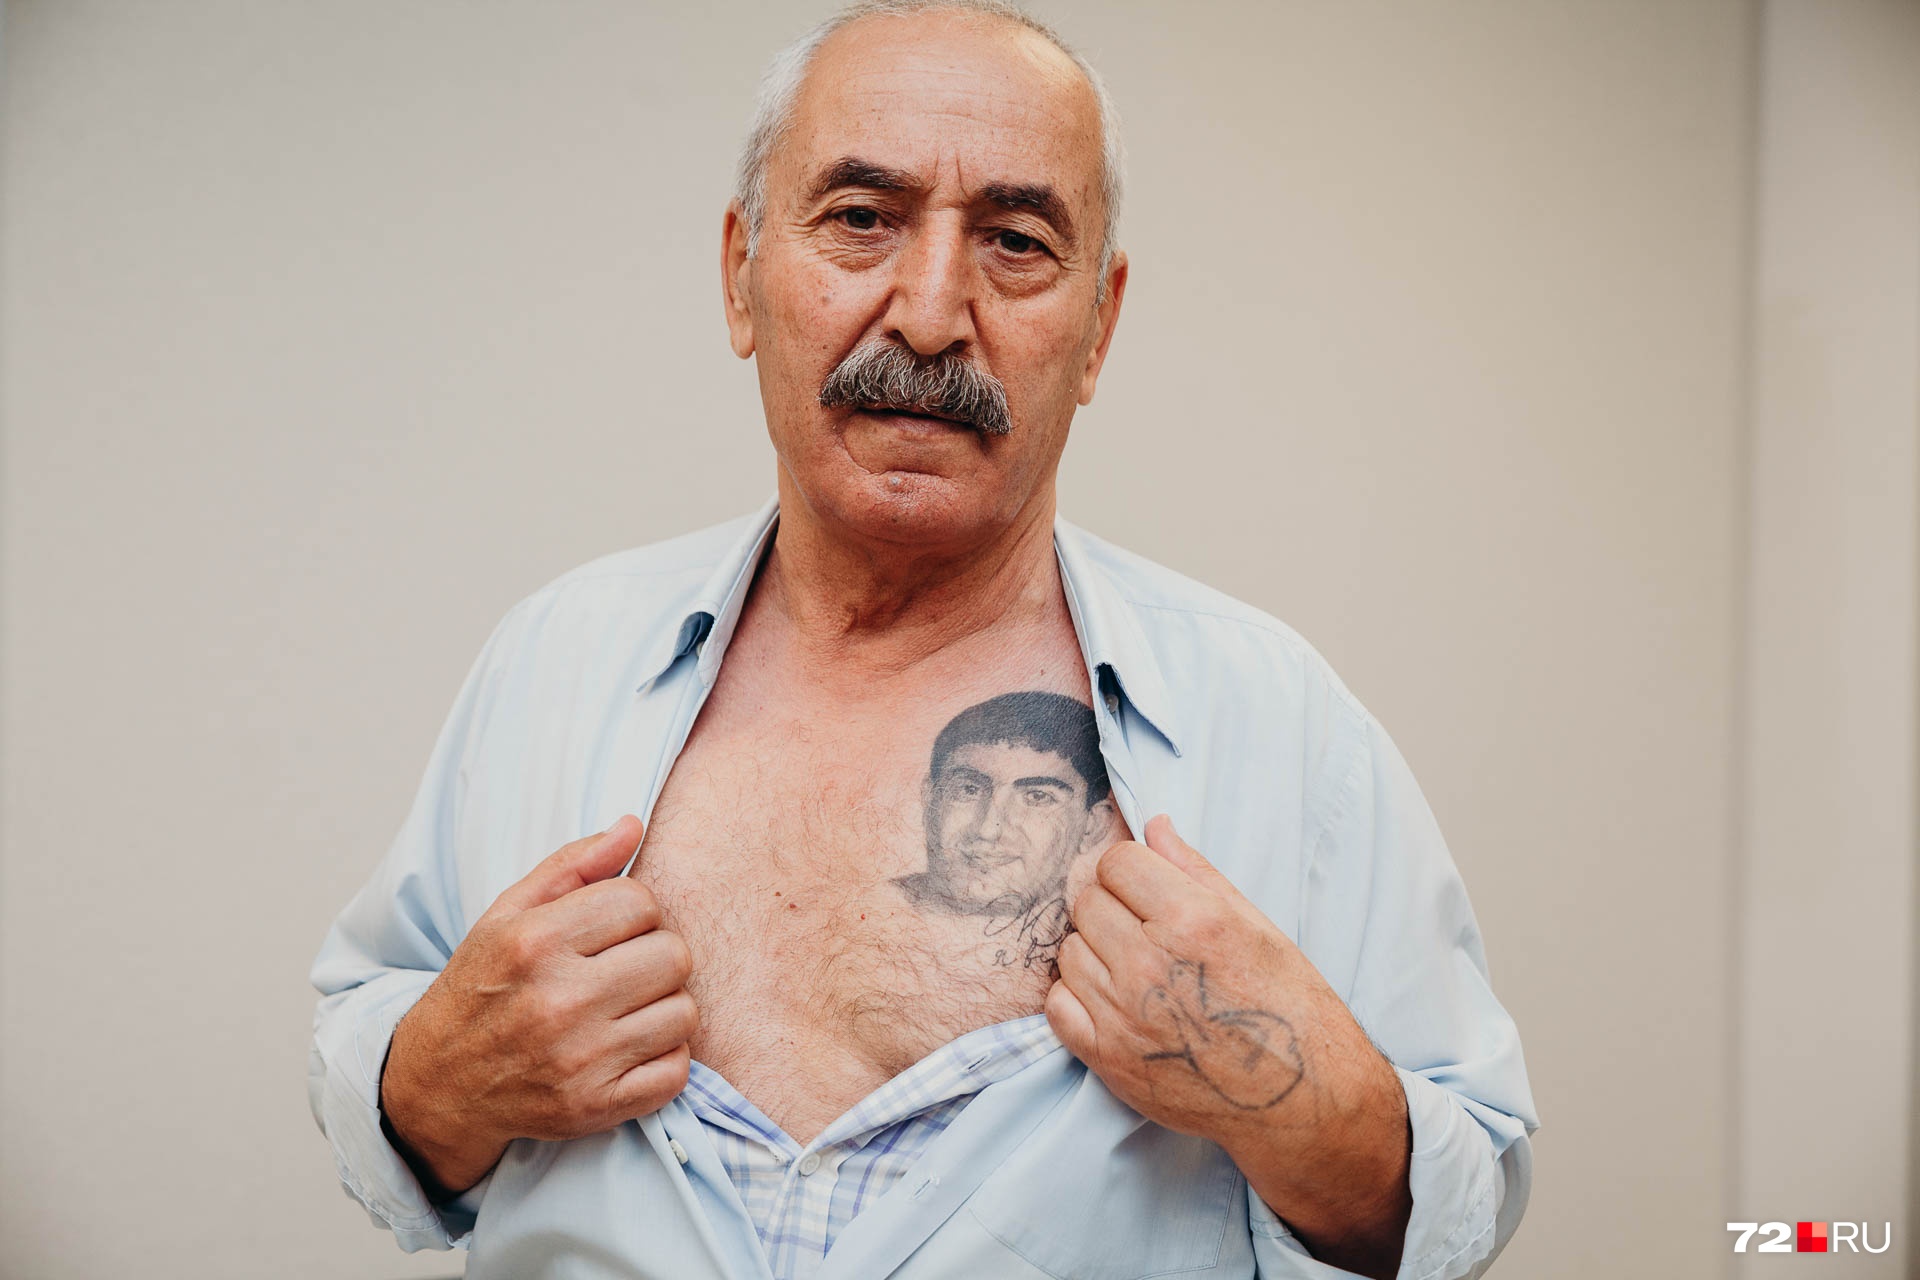 Николай Шушанов сделал на груди тату с портретом сына. Под портретом надпись: «Жди, я вернусь». Николай Шушанов говорит, что в его сердце сын всегда будет жив